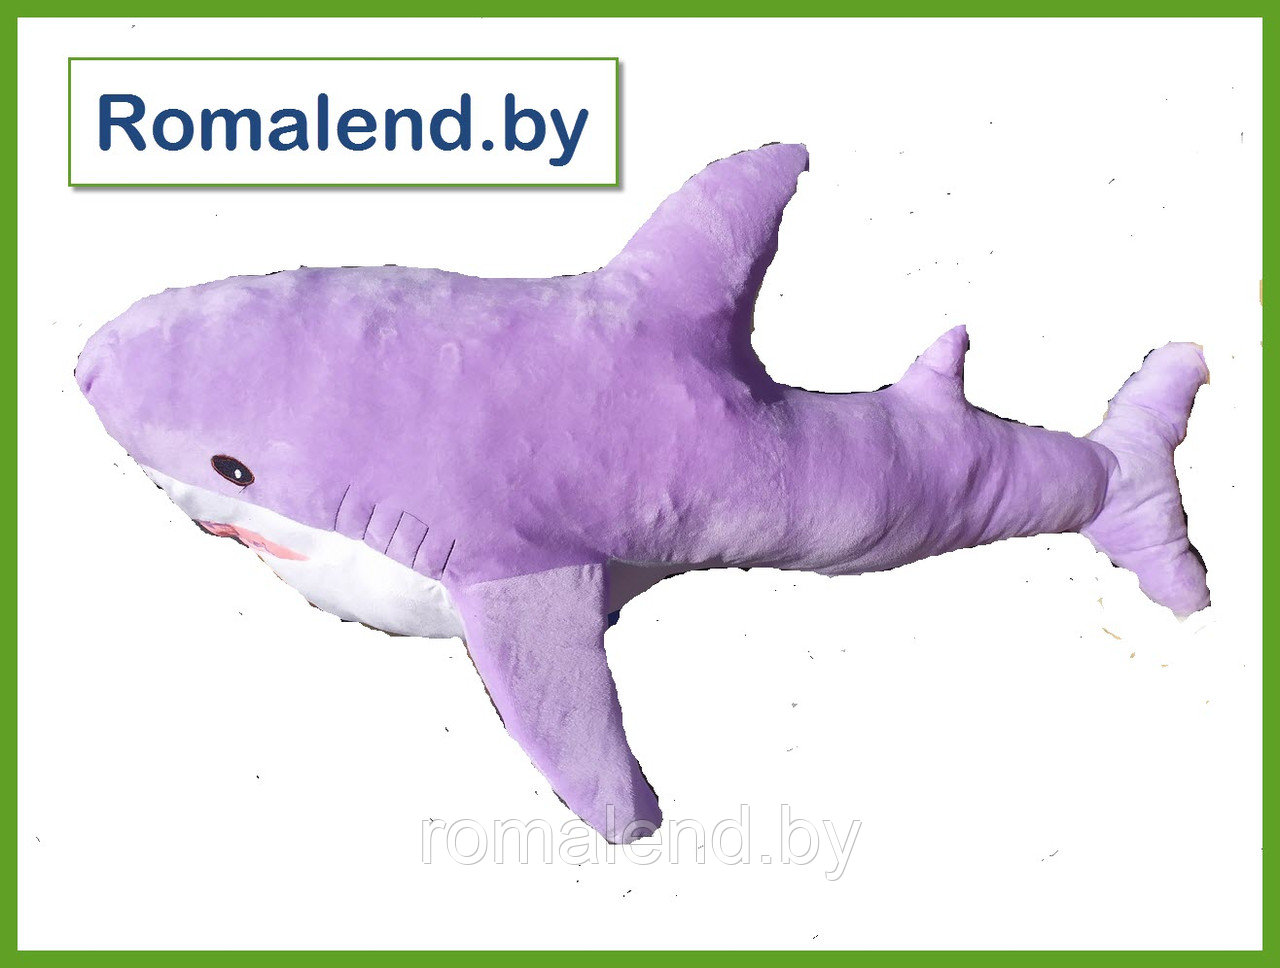 Мягкая игрушка Акула фиолетовая 100 см